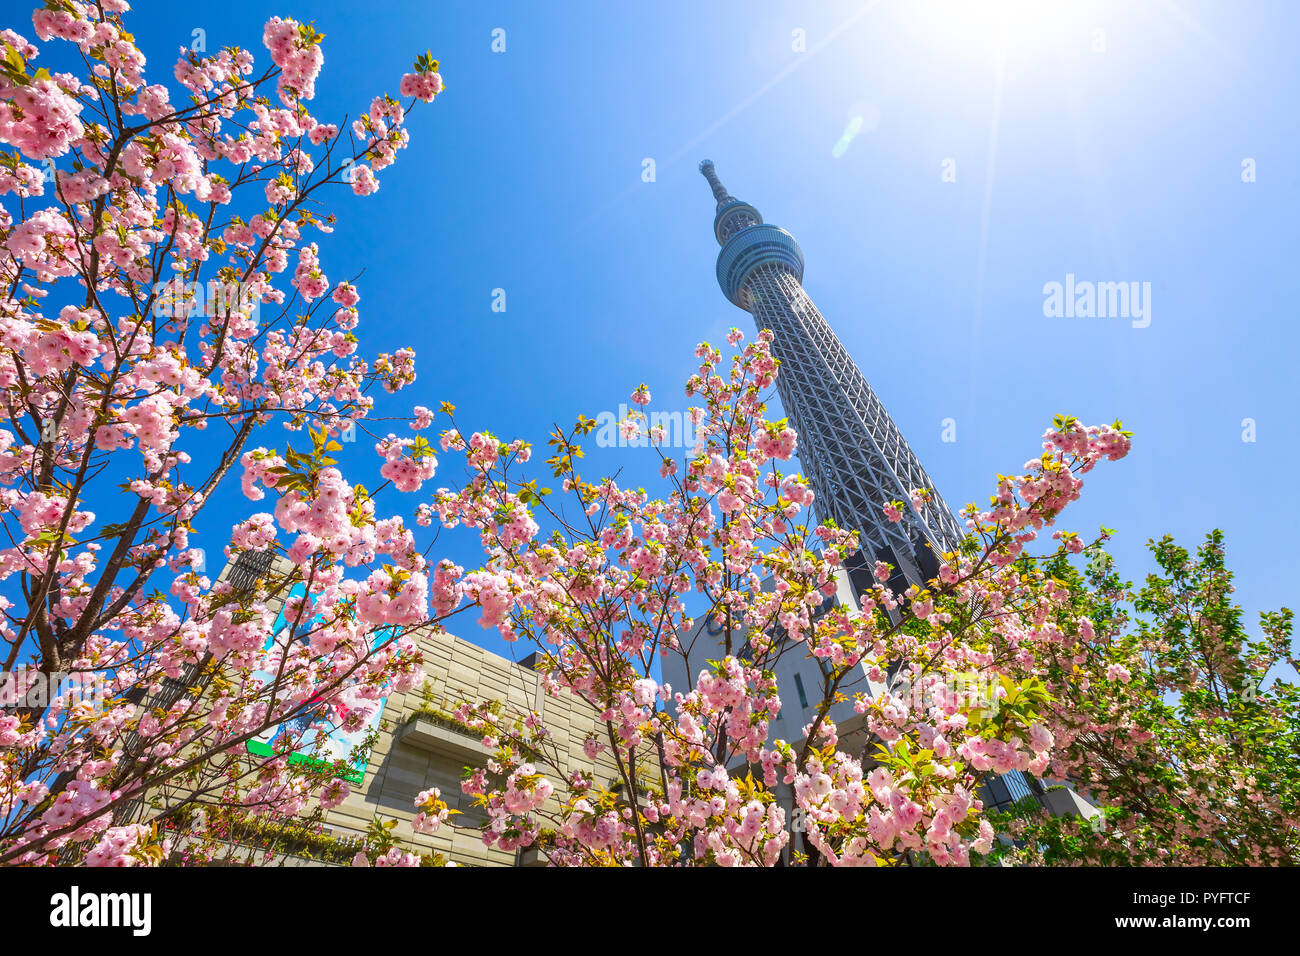 Tokio, Japón - Abril 19, 2017: Tokyo Skytree y Sakura árbol en plena floración. Tokyo Skytree es la torre más alta del mundo, la radiodifusión y la torre de observación en el distrito de Sumida. Azul cielo soleado. Foto de stock